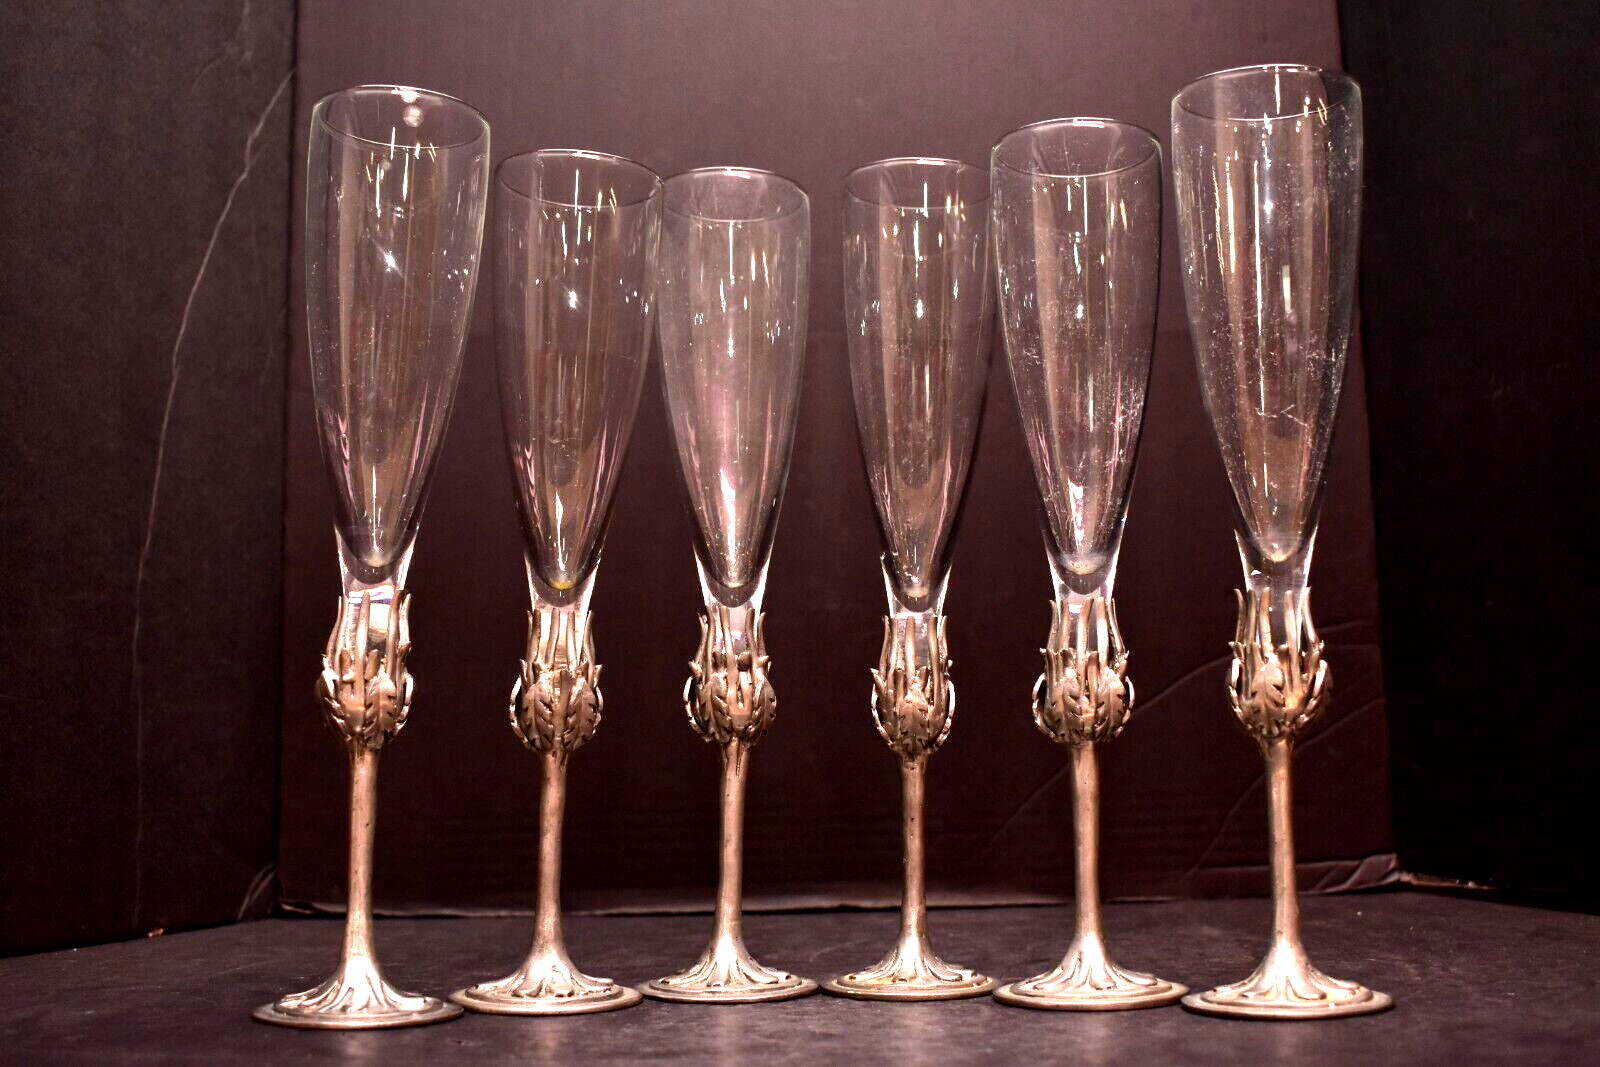 Set 6 VTG Caster Cooper Pewter Champagne Flutes Toasting Glasses Brutalist MCM